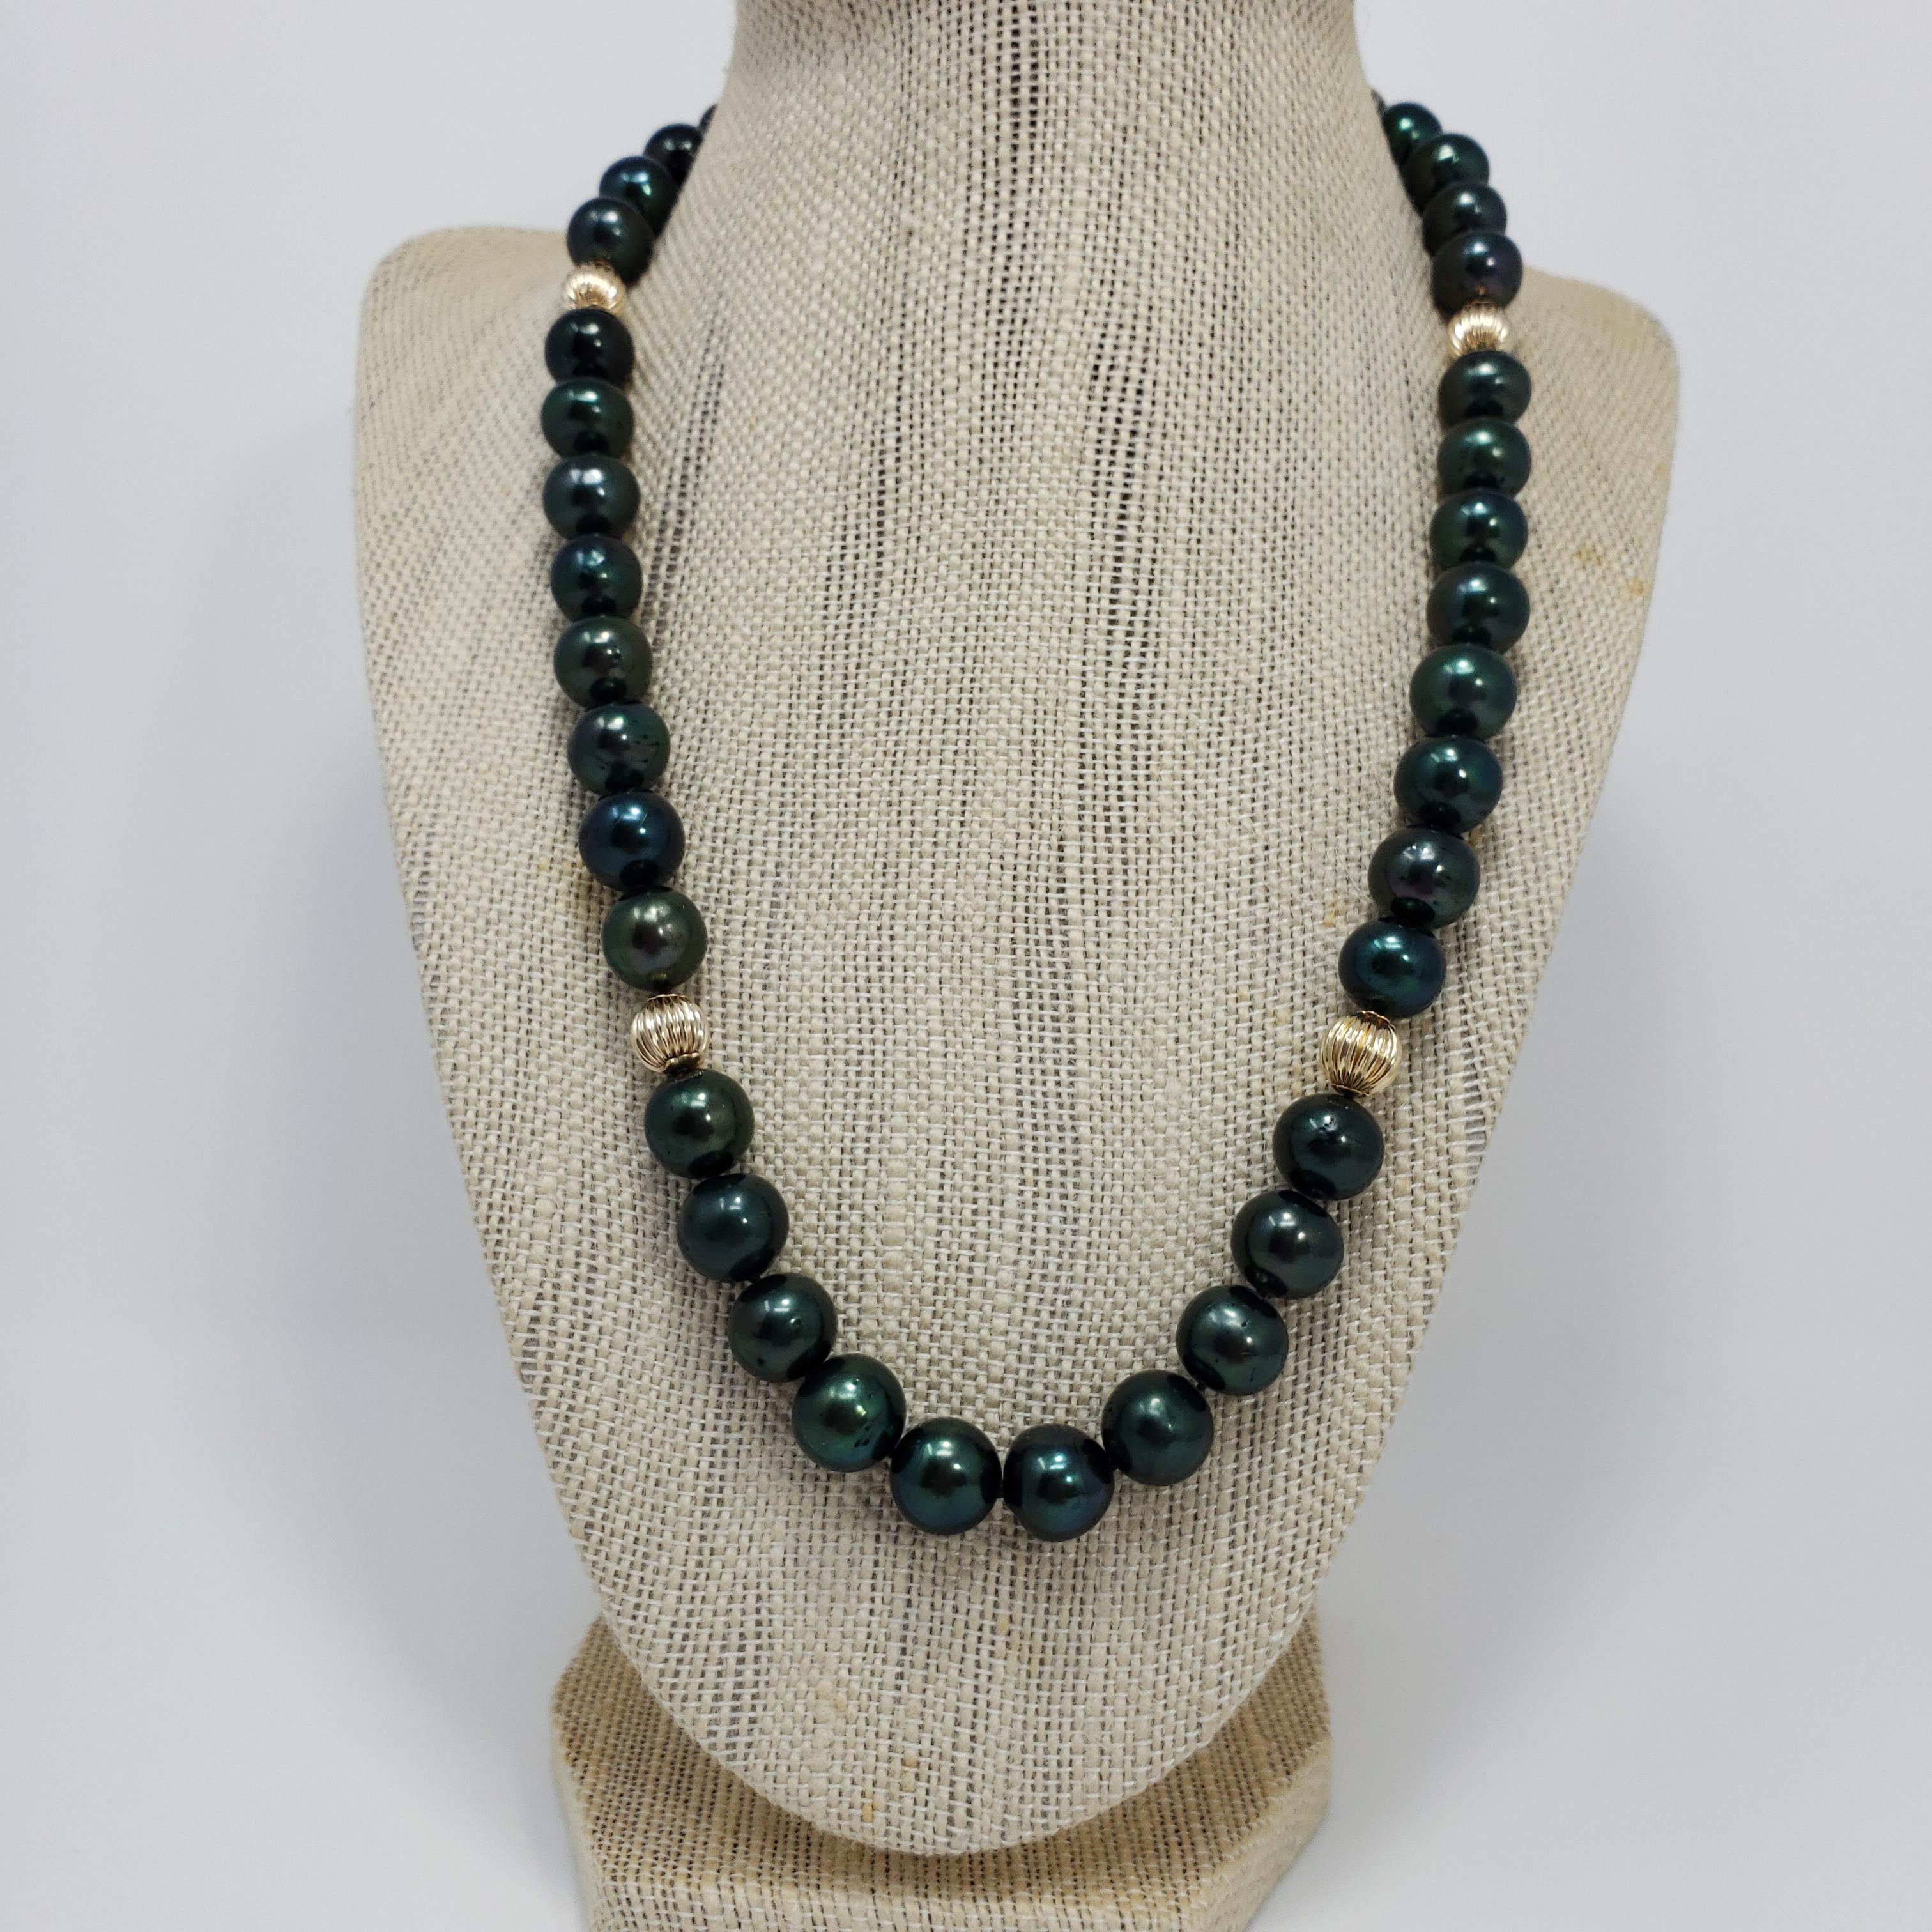 Un collier sophistiqué en perles de Tahiti. Ce rang de perles de Tahiti a une teinte verte luxueuse et est décoré d'accents et d'un fermoir en or jaune 14K. Un accessoire parfait pour compléter n'importe quel style !

Poinçons : 14K
Les perles